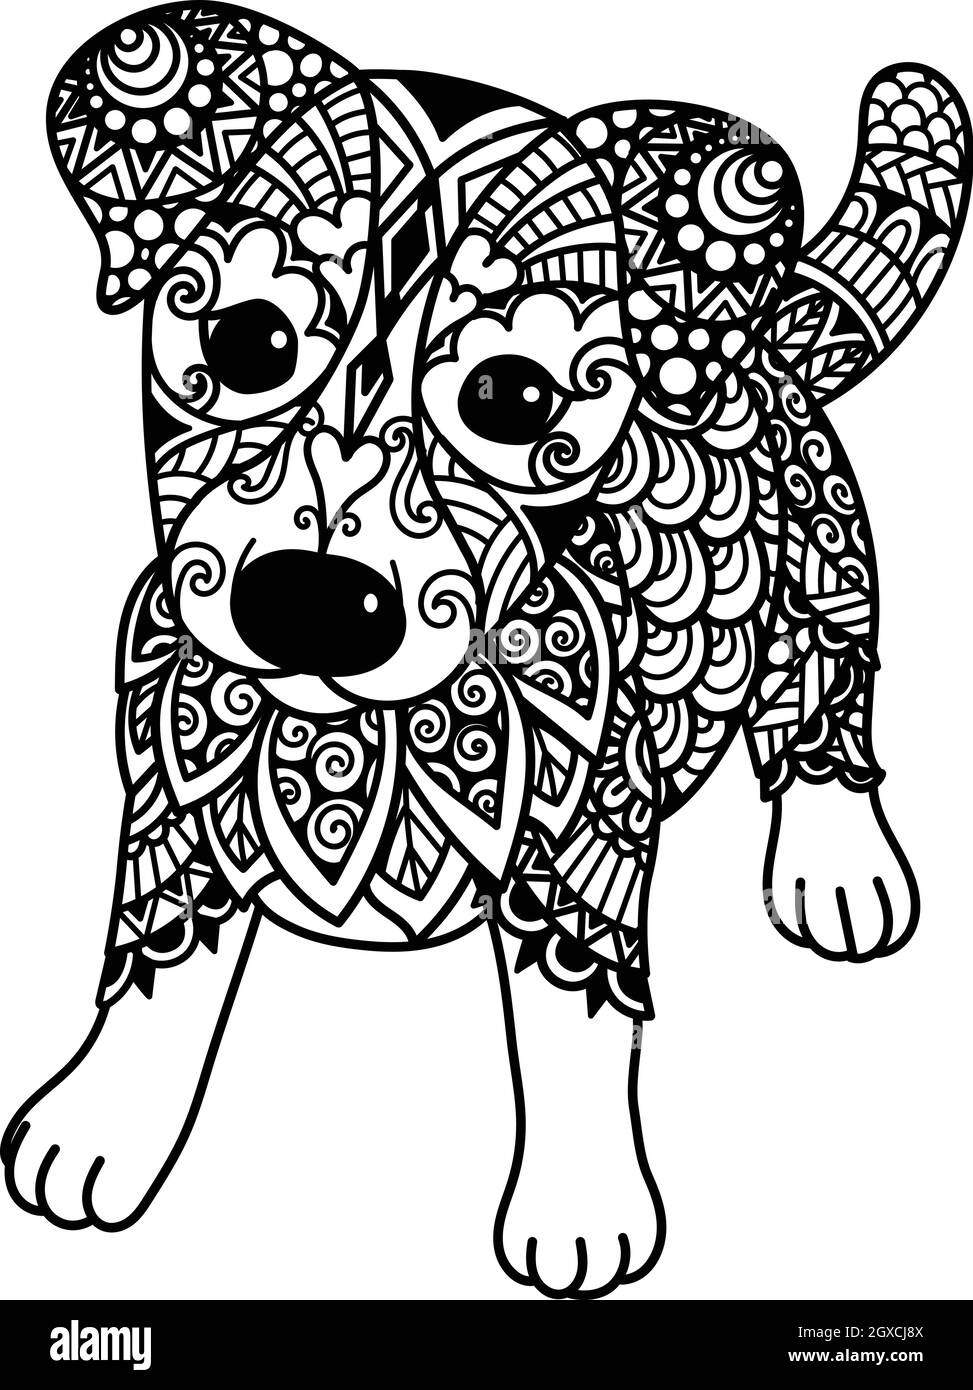 Mignon Jack Russell Terrier chiot pour l'impression, livre de coloriage, t-shirt et ainsi de suite. Vecteur de brut Illustration de Vecteur